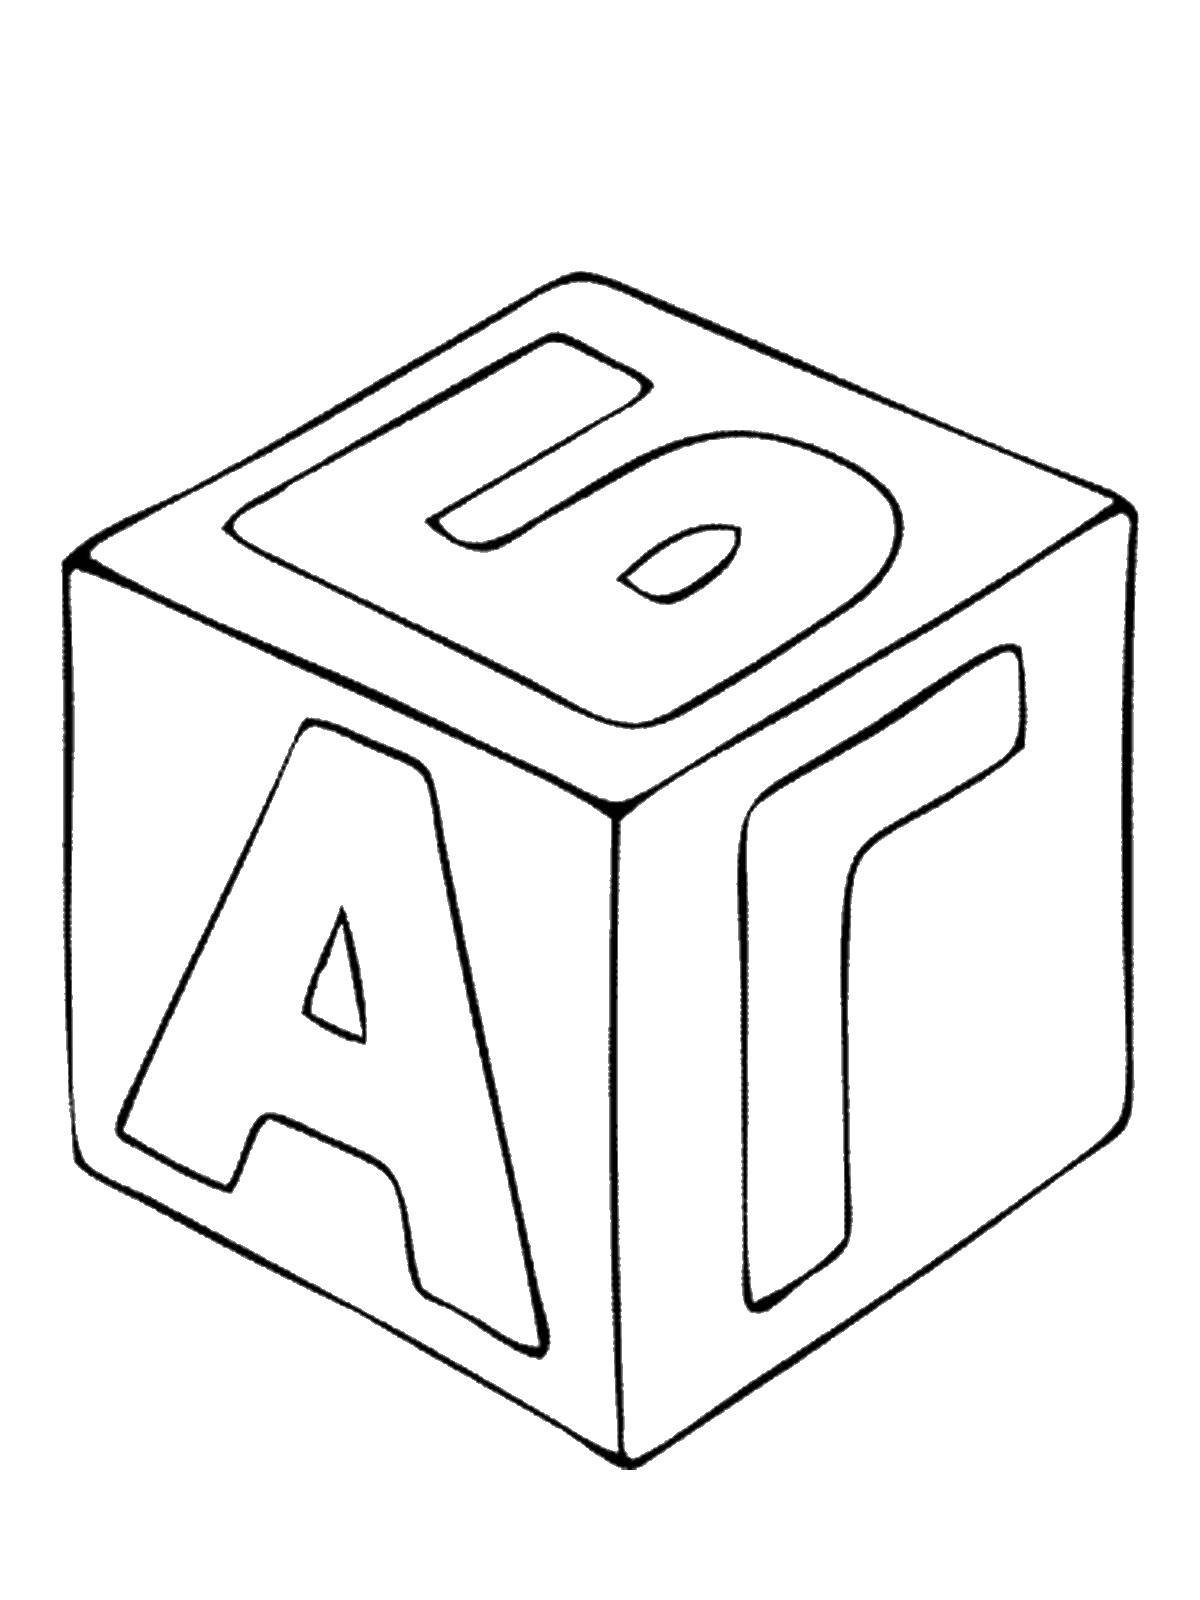 Раскраска игрушек кубик, букв и алфавита для детей (кубик, алфавит, знания)